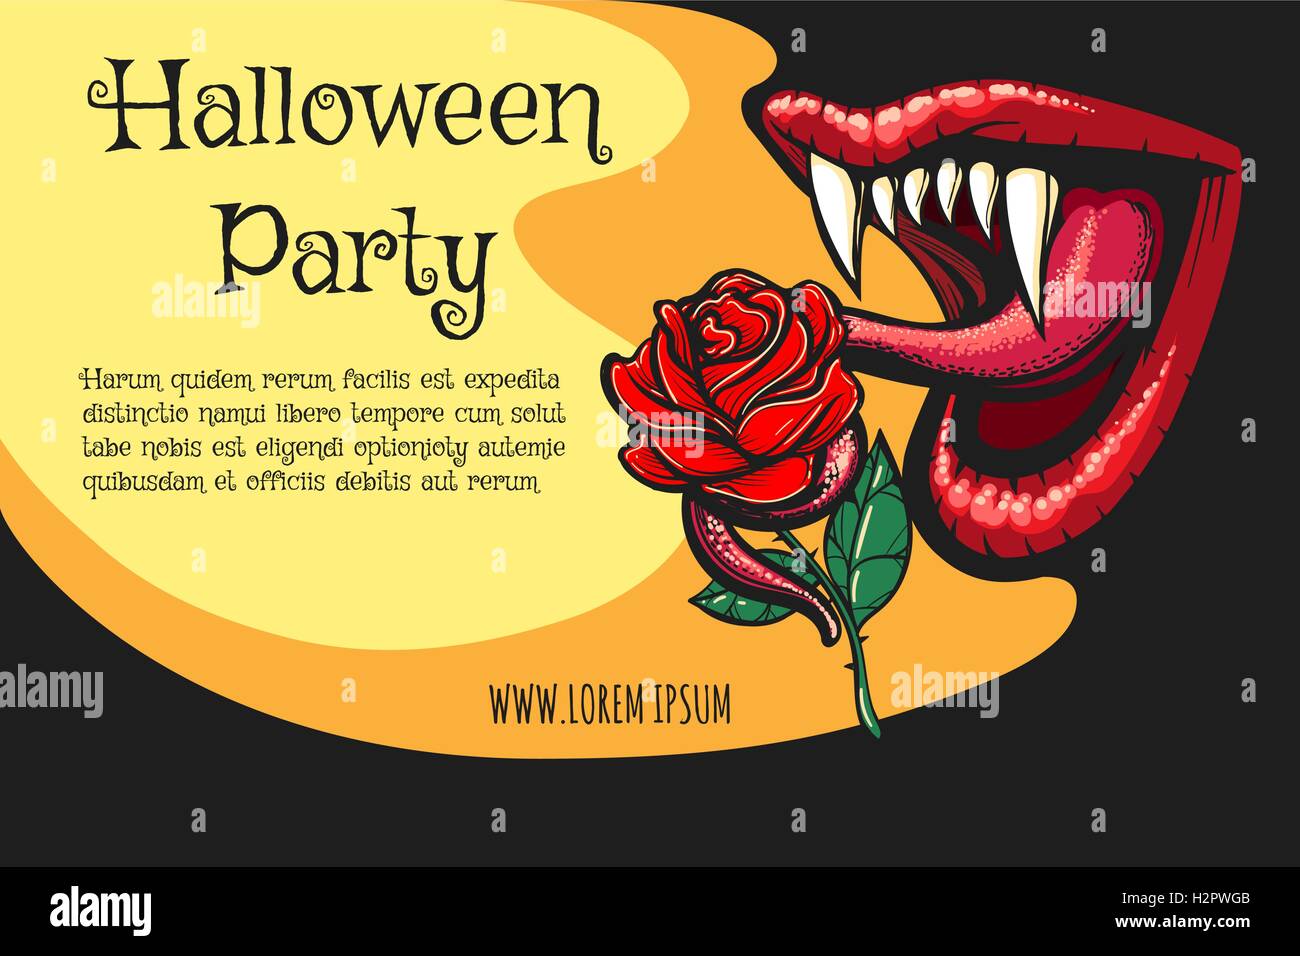 Halloween Party Poster mit offenen Vampir Mund und schwarze rose Blume. Vektor-Illustration. Stock Vektor